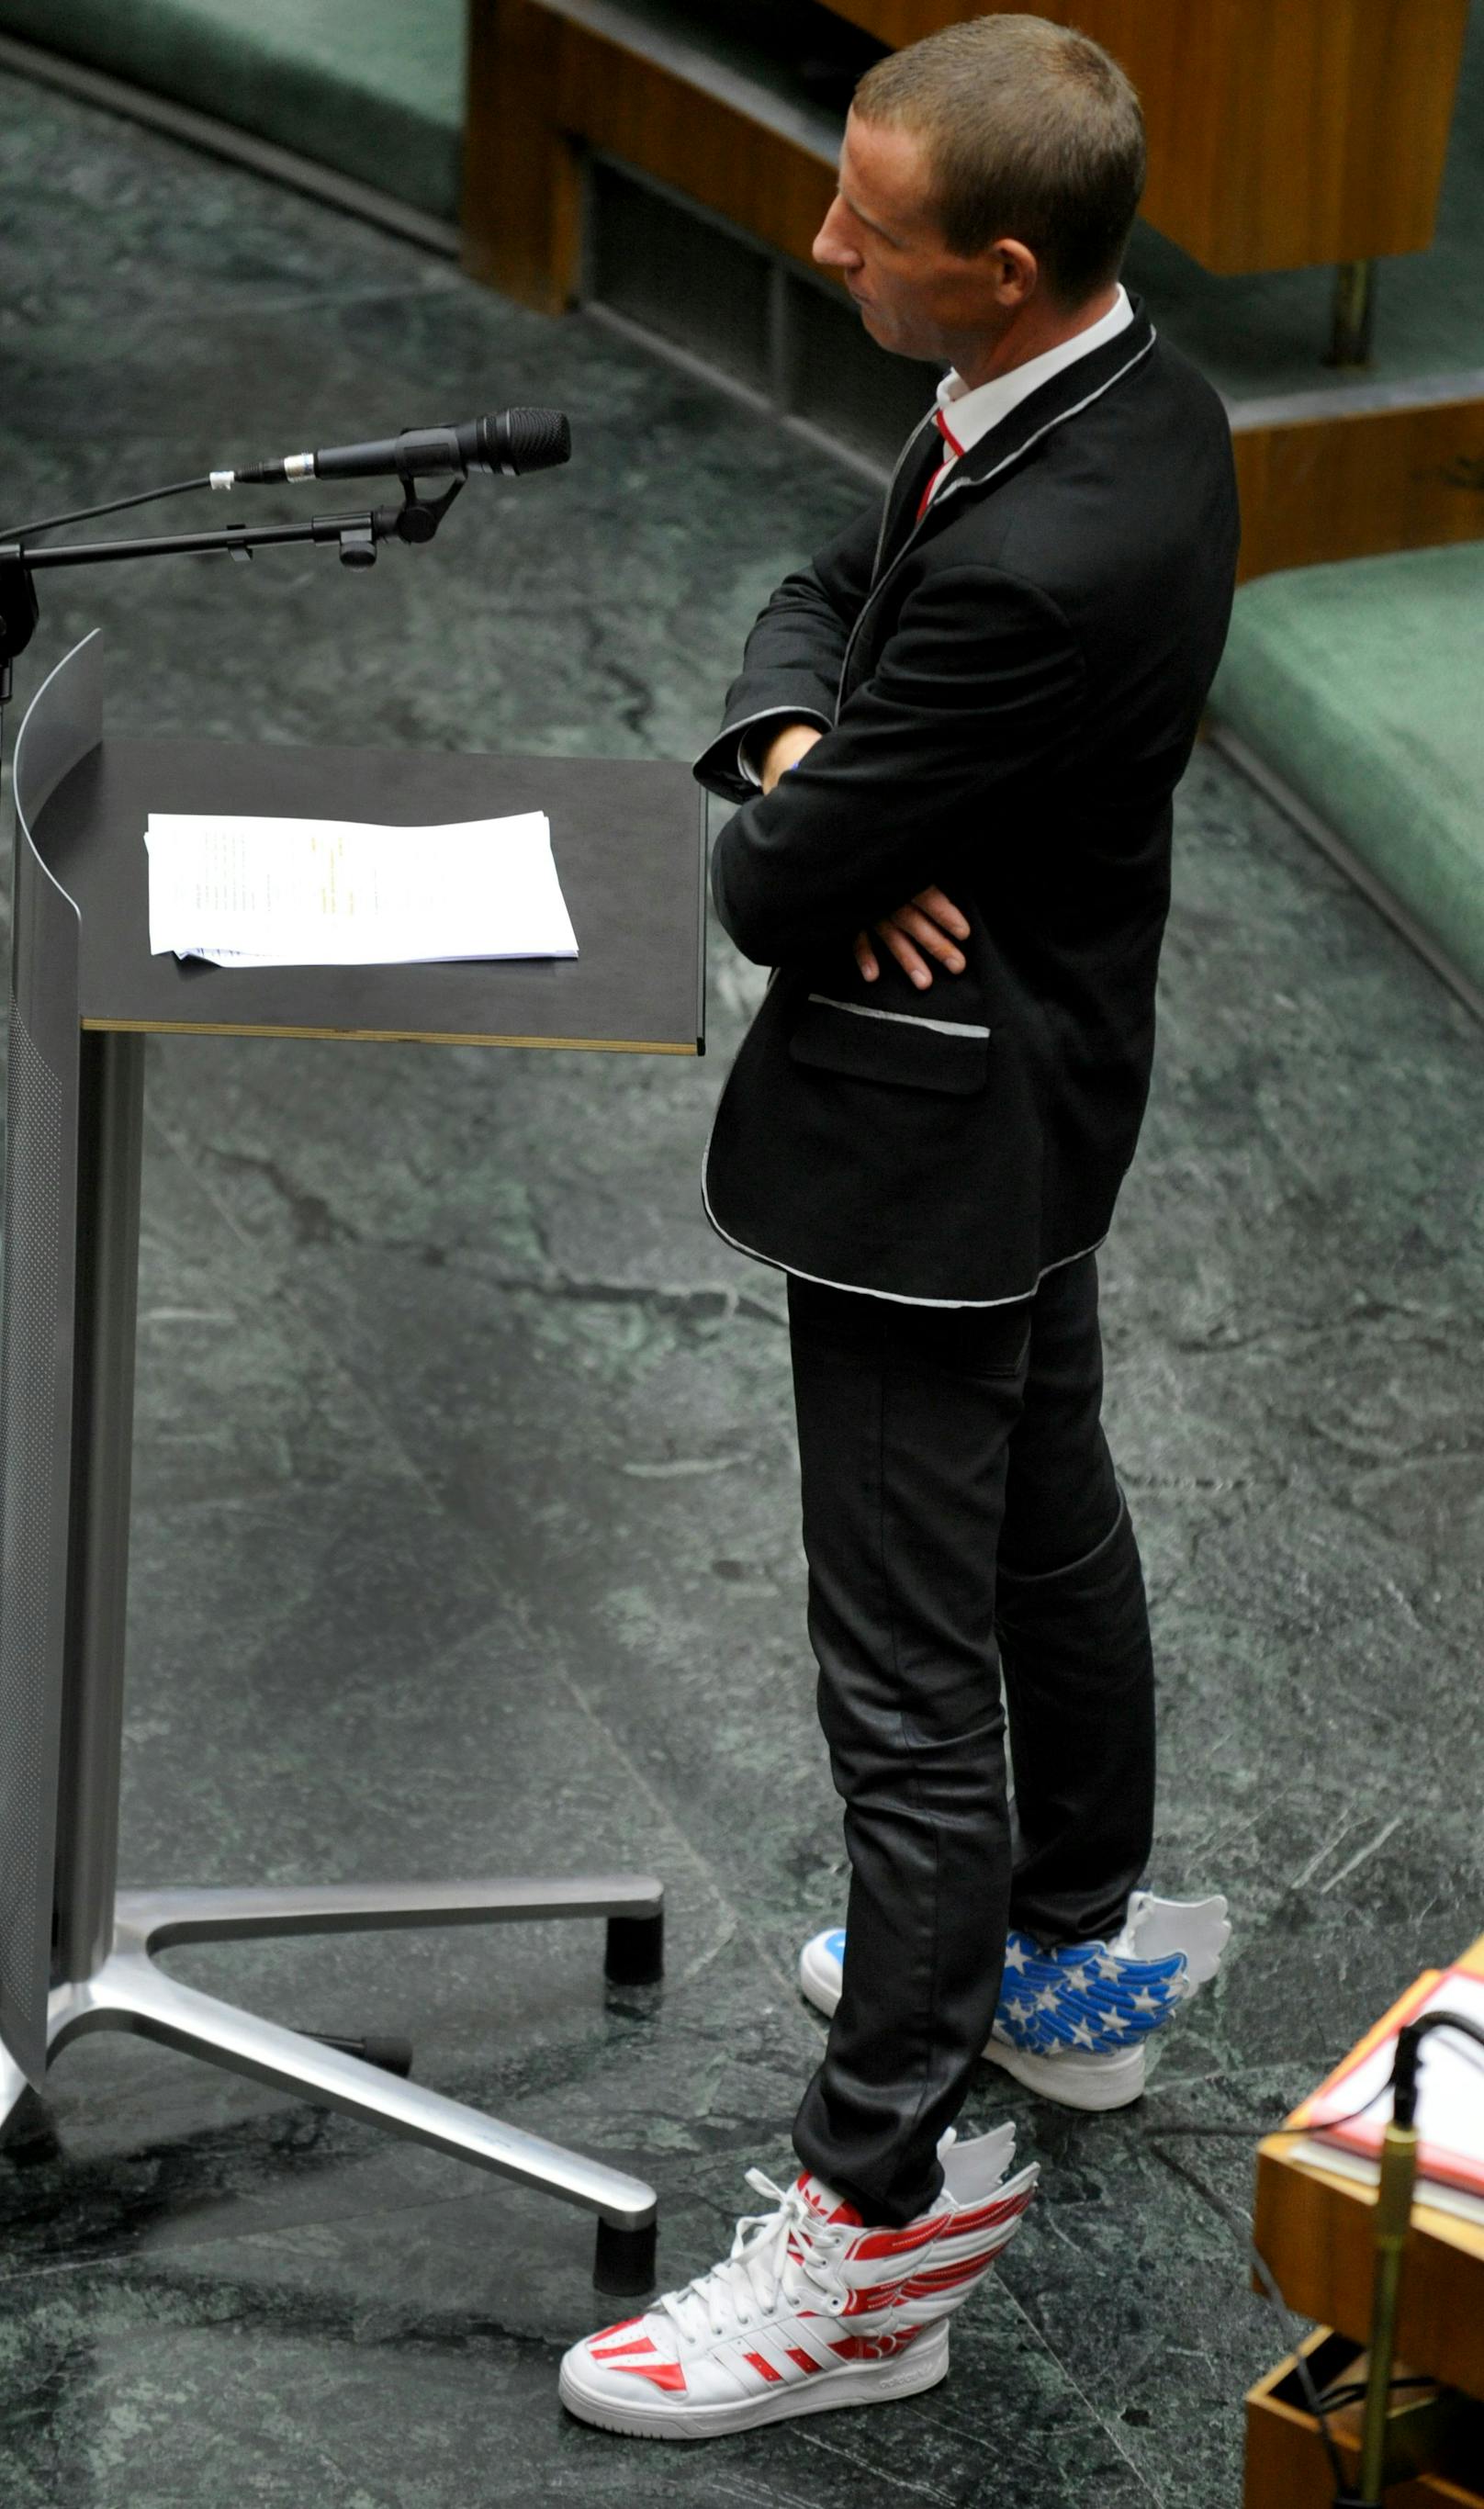 Petzner war schon als Politiker für seine extravaganten Auftritte bekannt. Am 6. Dezember 2012 waren Petzners Flügel-Schuhe Gesprächsthema Nummer 1.